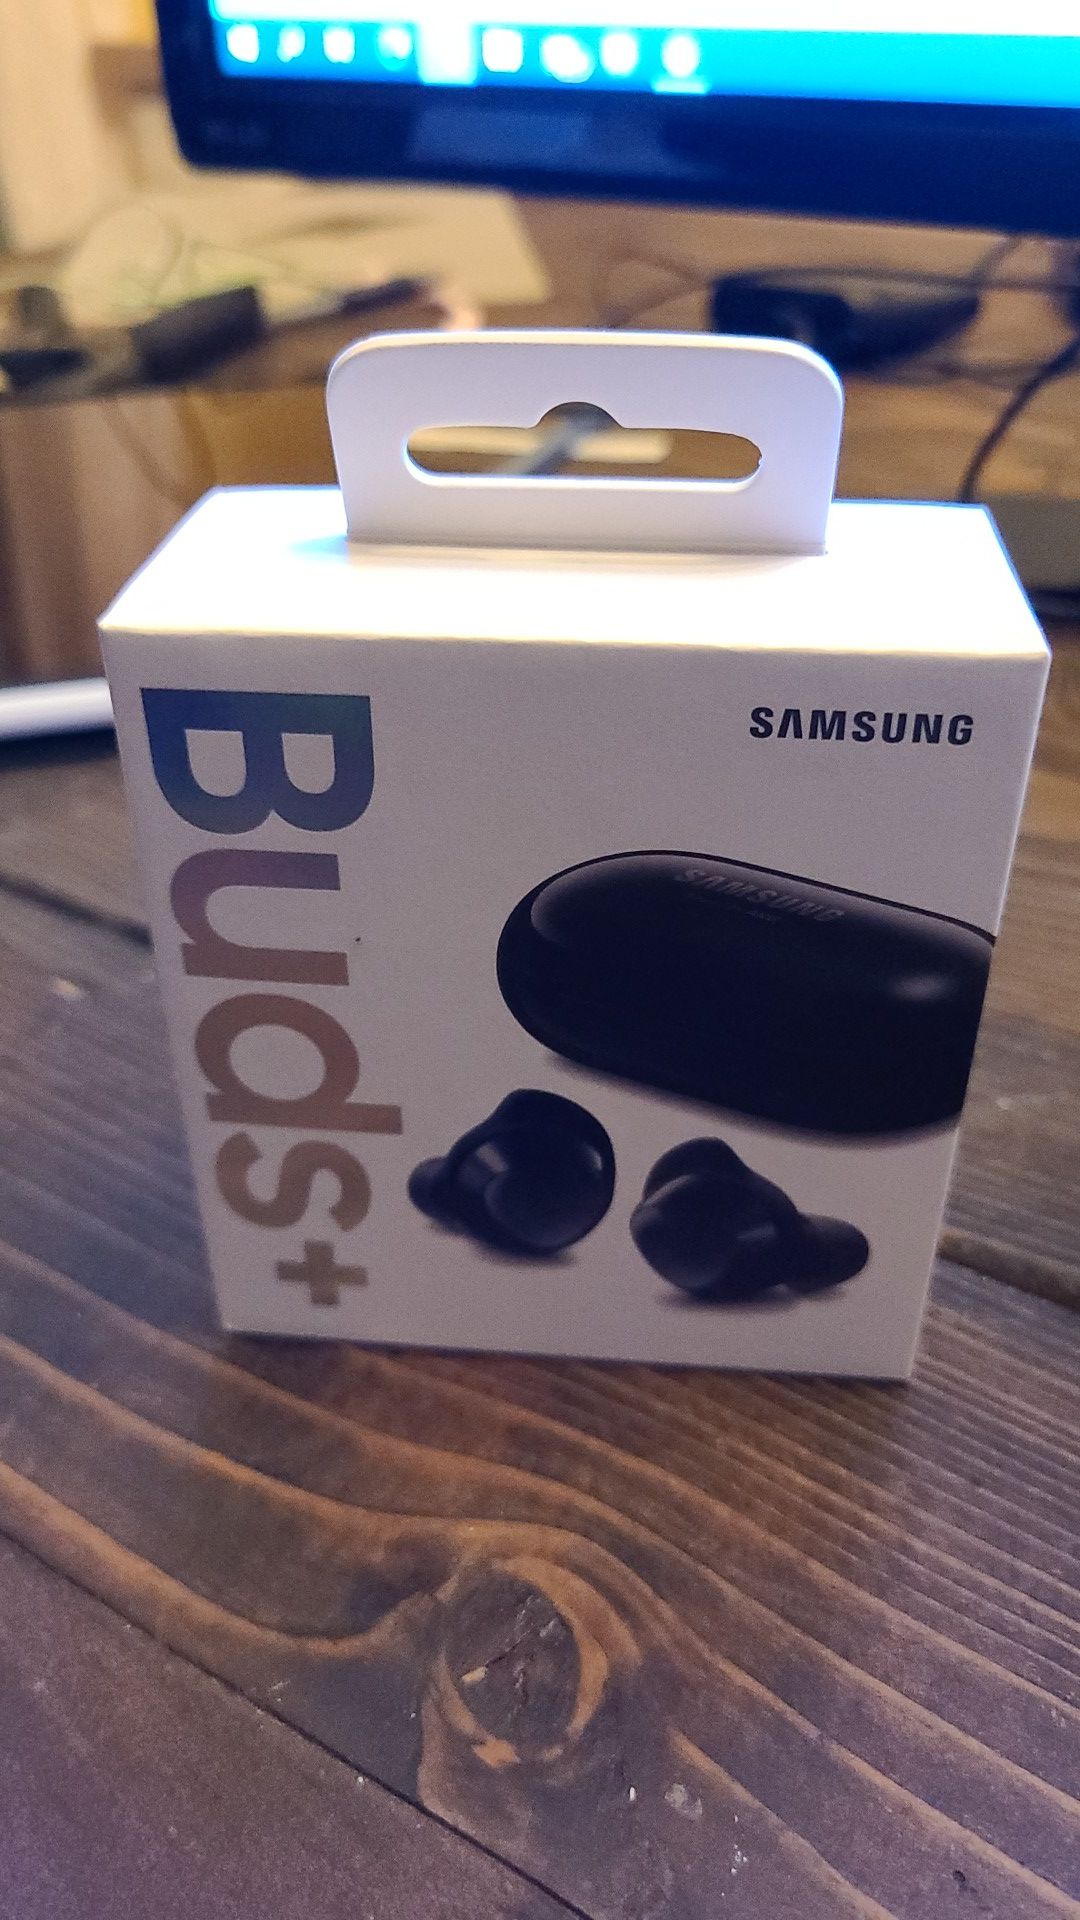 Samsung Galaxy Buds+. Sealed in box.